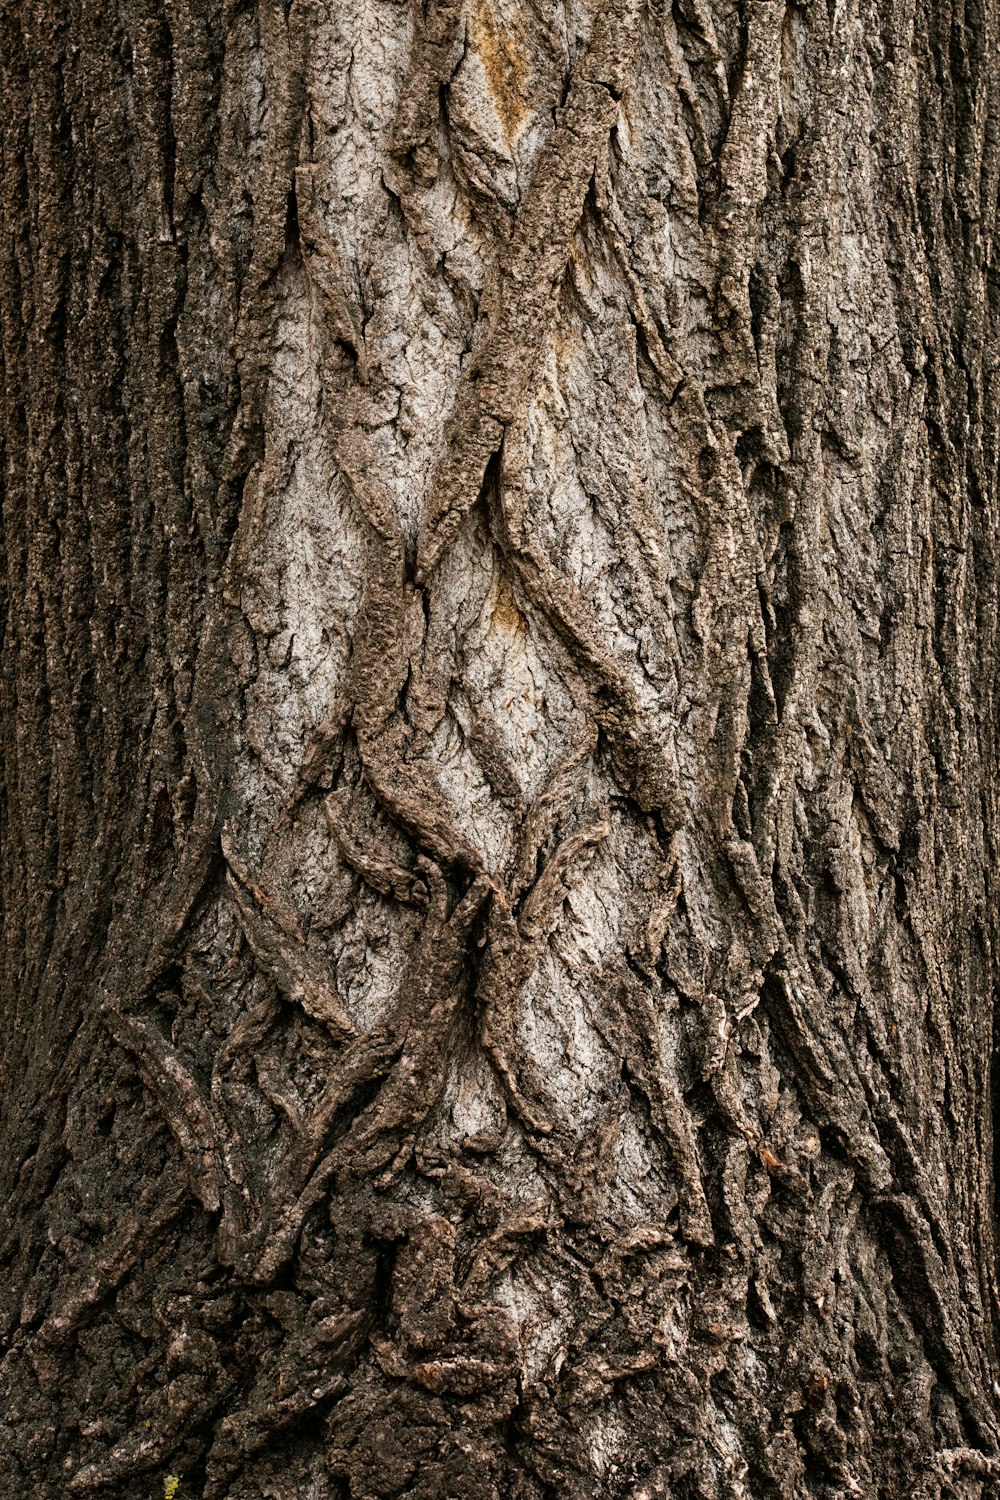 tronco d'albero marrone in fotografia ravvicinata